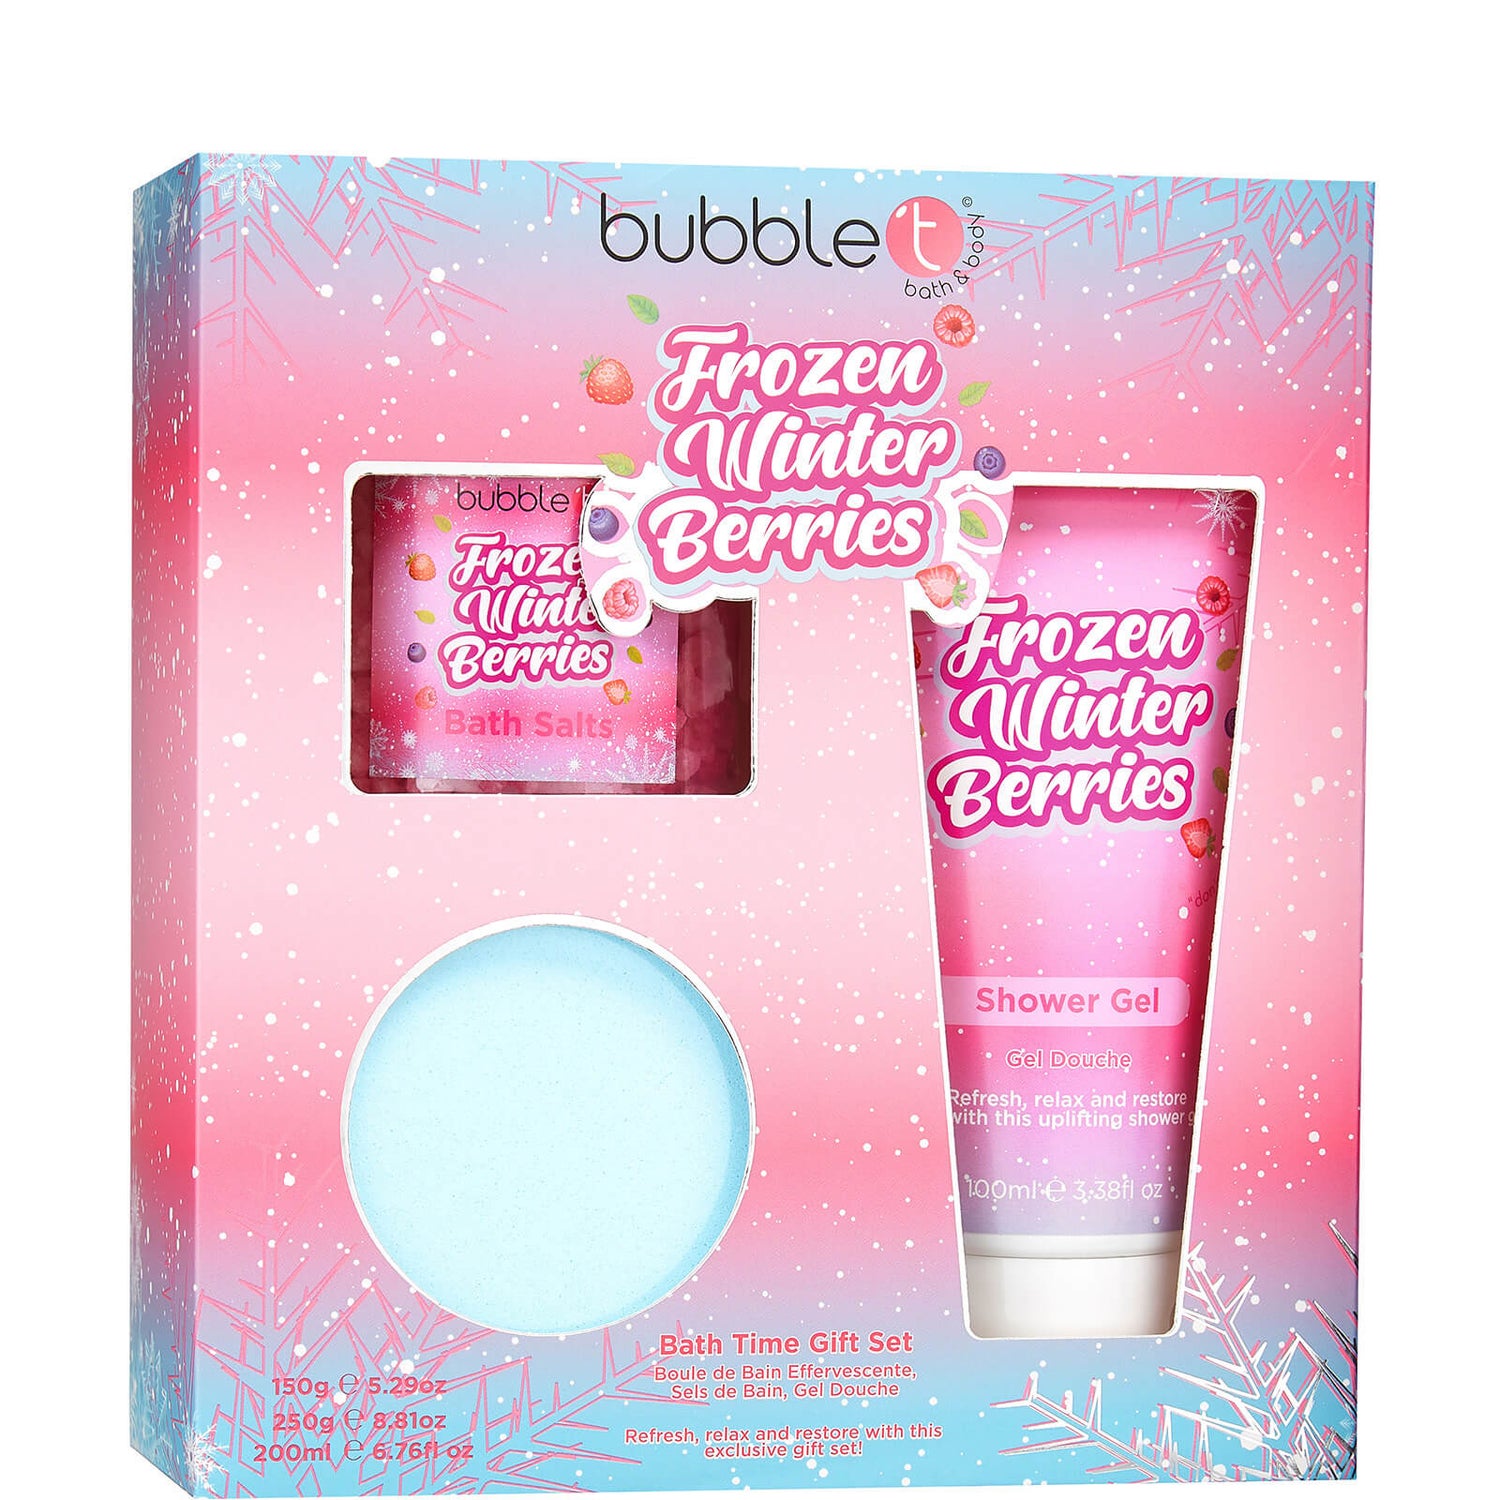 Caixa de Seleção da Bubble T Cosmetics Frozen Winter Berries